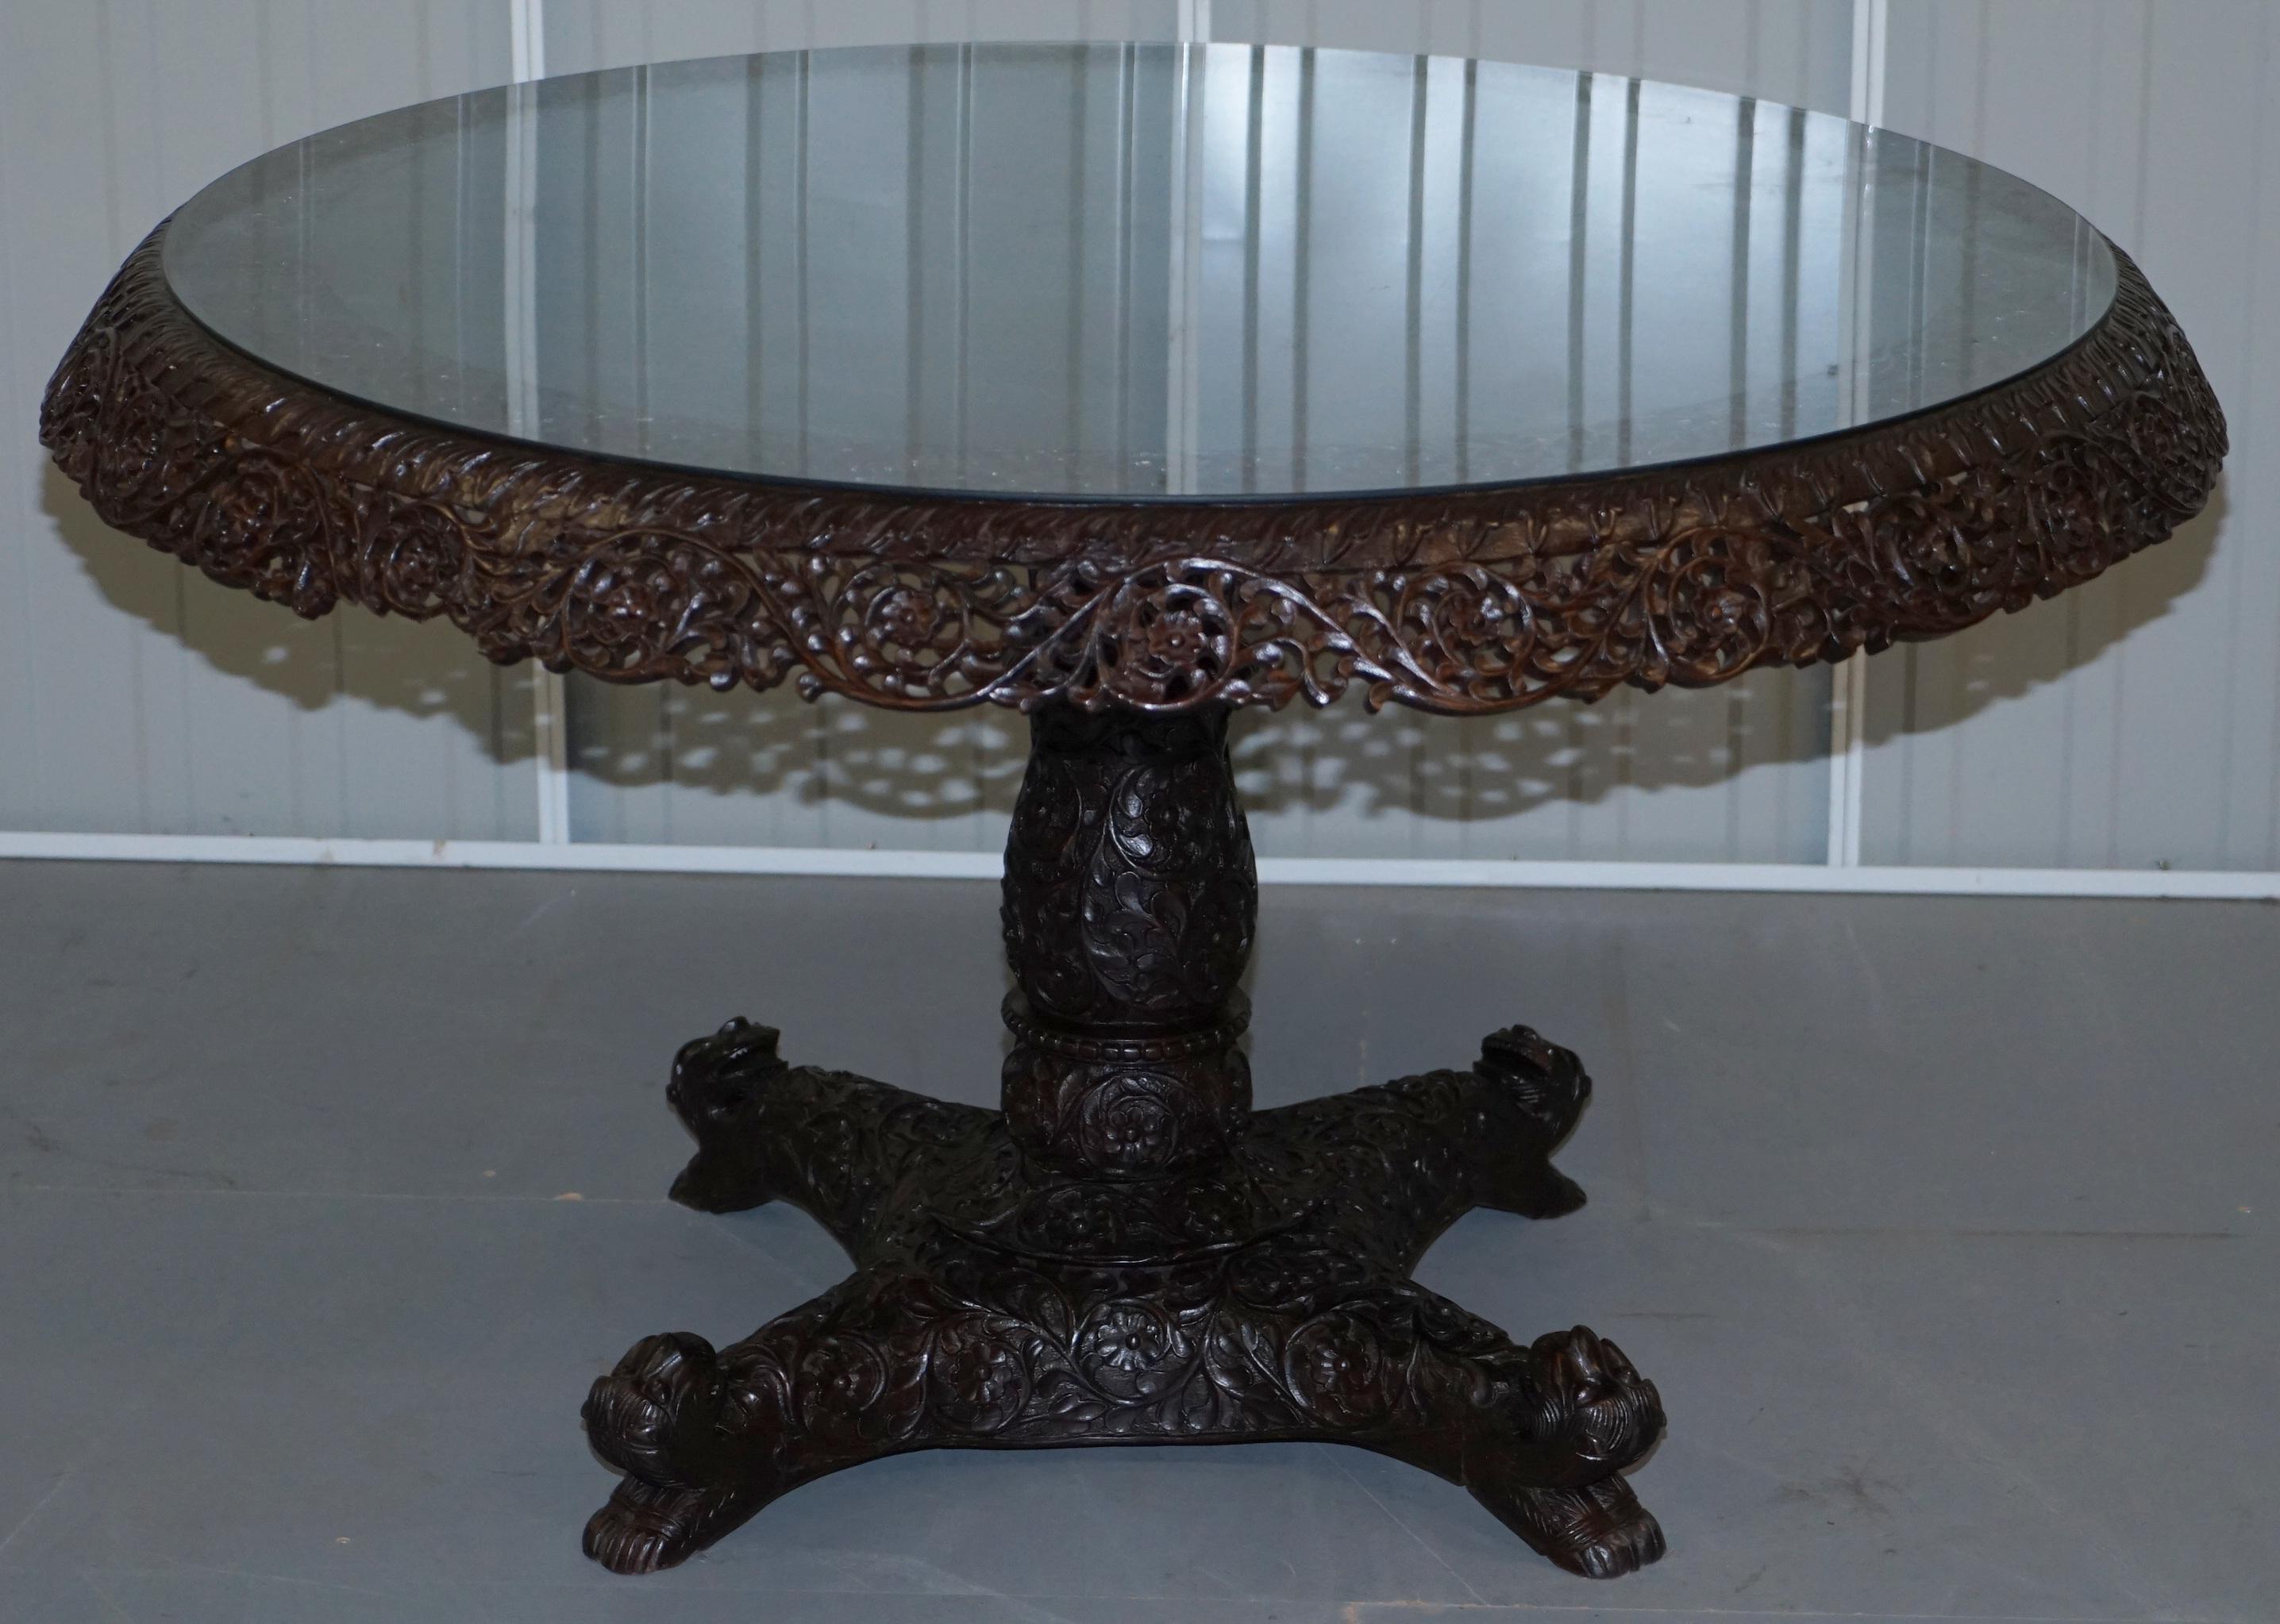 Nous sommes ravis d'offrir à la vente cette superbe table de salle à manger ou de centre en bois de rose sculpté à la main par des Anglo-Indiens au 19ème siècle

Un meuble d'art très décoratif et de belle apparence, certaines de ces tables se